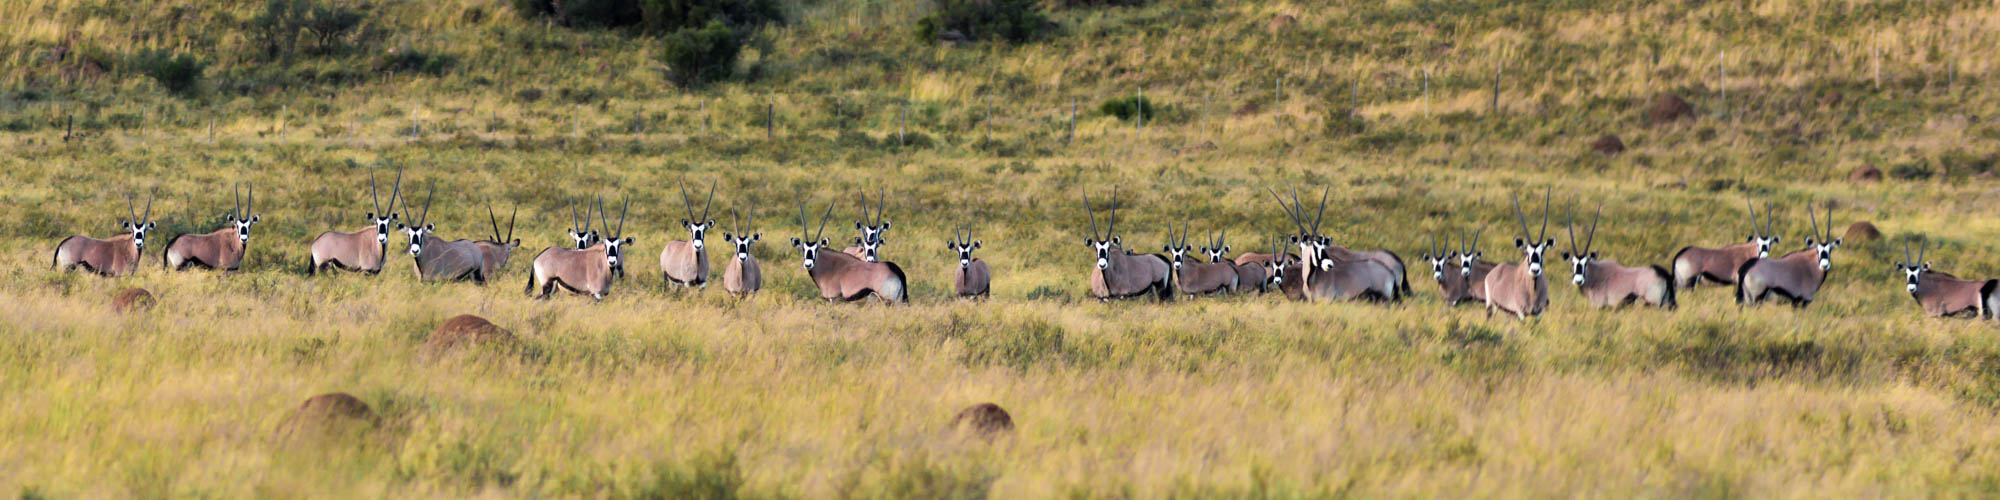 large herd of gemsbok in karoo